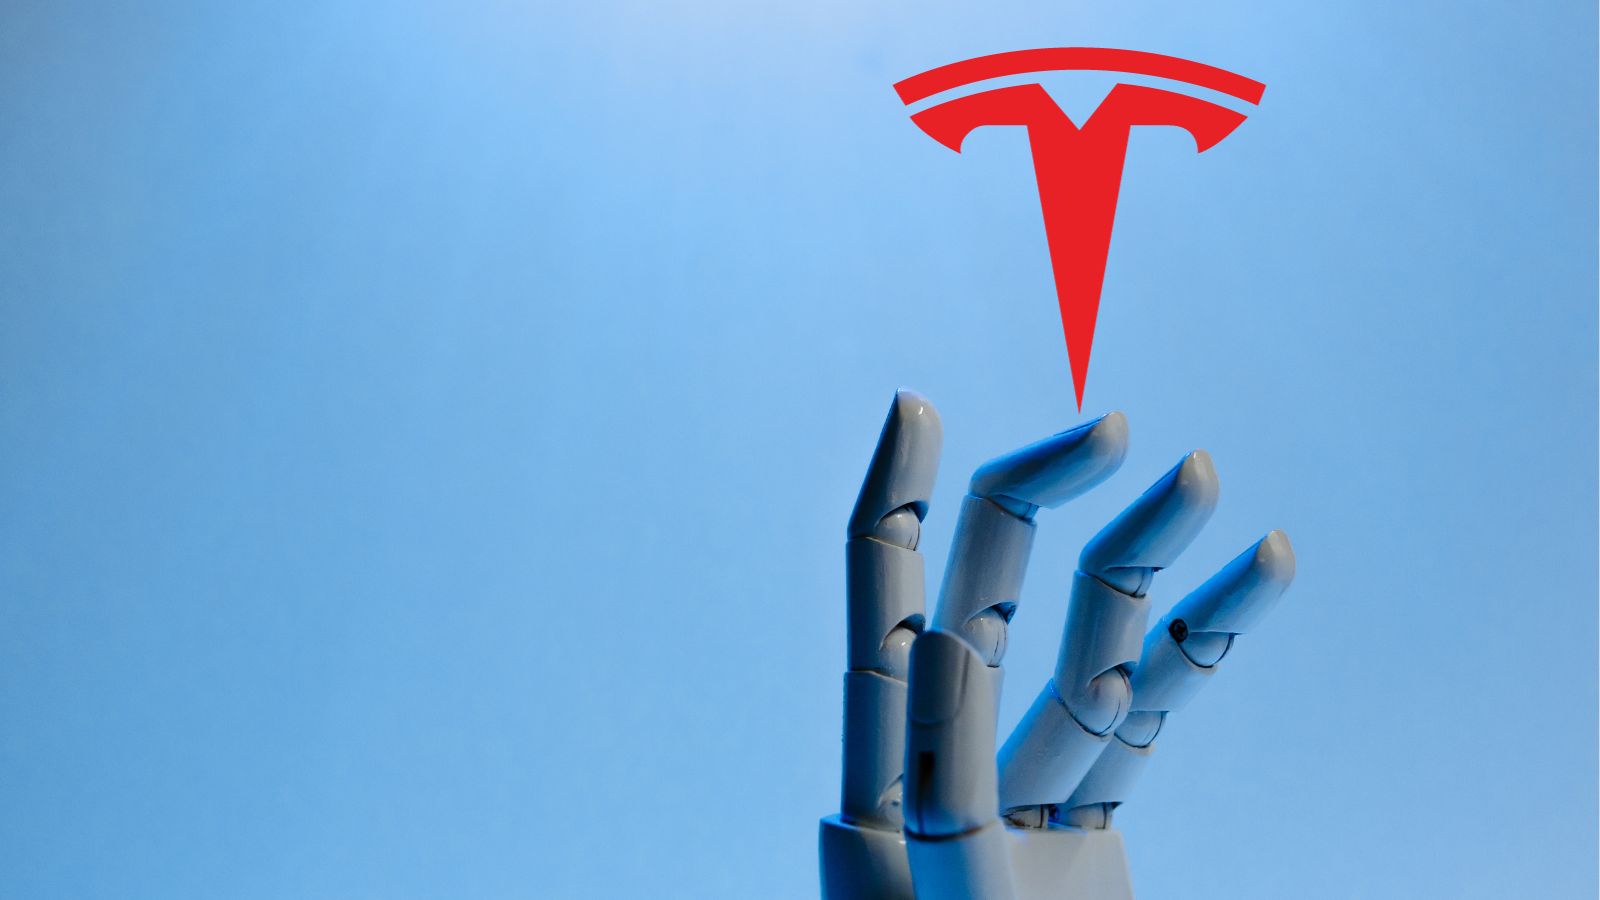 Tesla mostra Optimus, un robot umanoide davvero INCREDIBILE